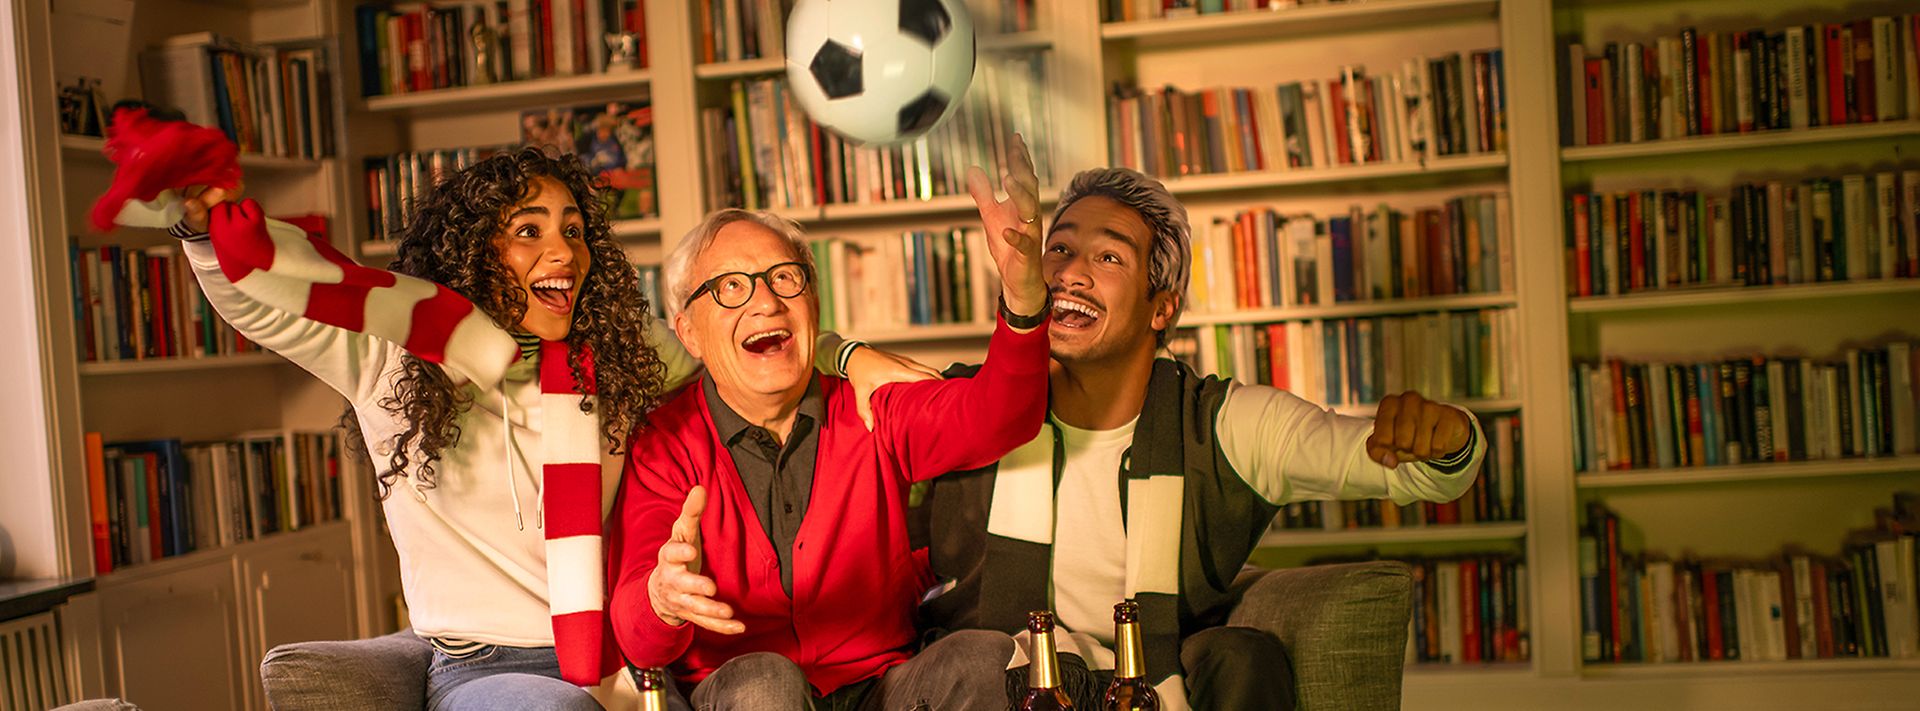 Drei Menschen jubeln zusammen auf einem Sofa, während sie ein Fußballspiel schauen. Ein Fußball fliegt durch die Luft.